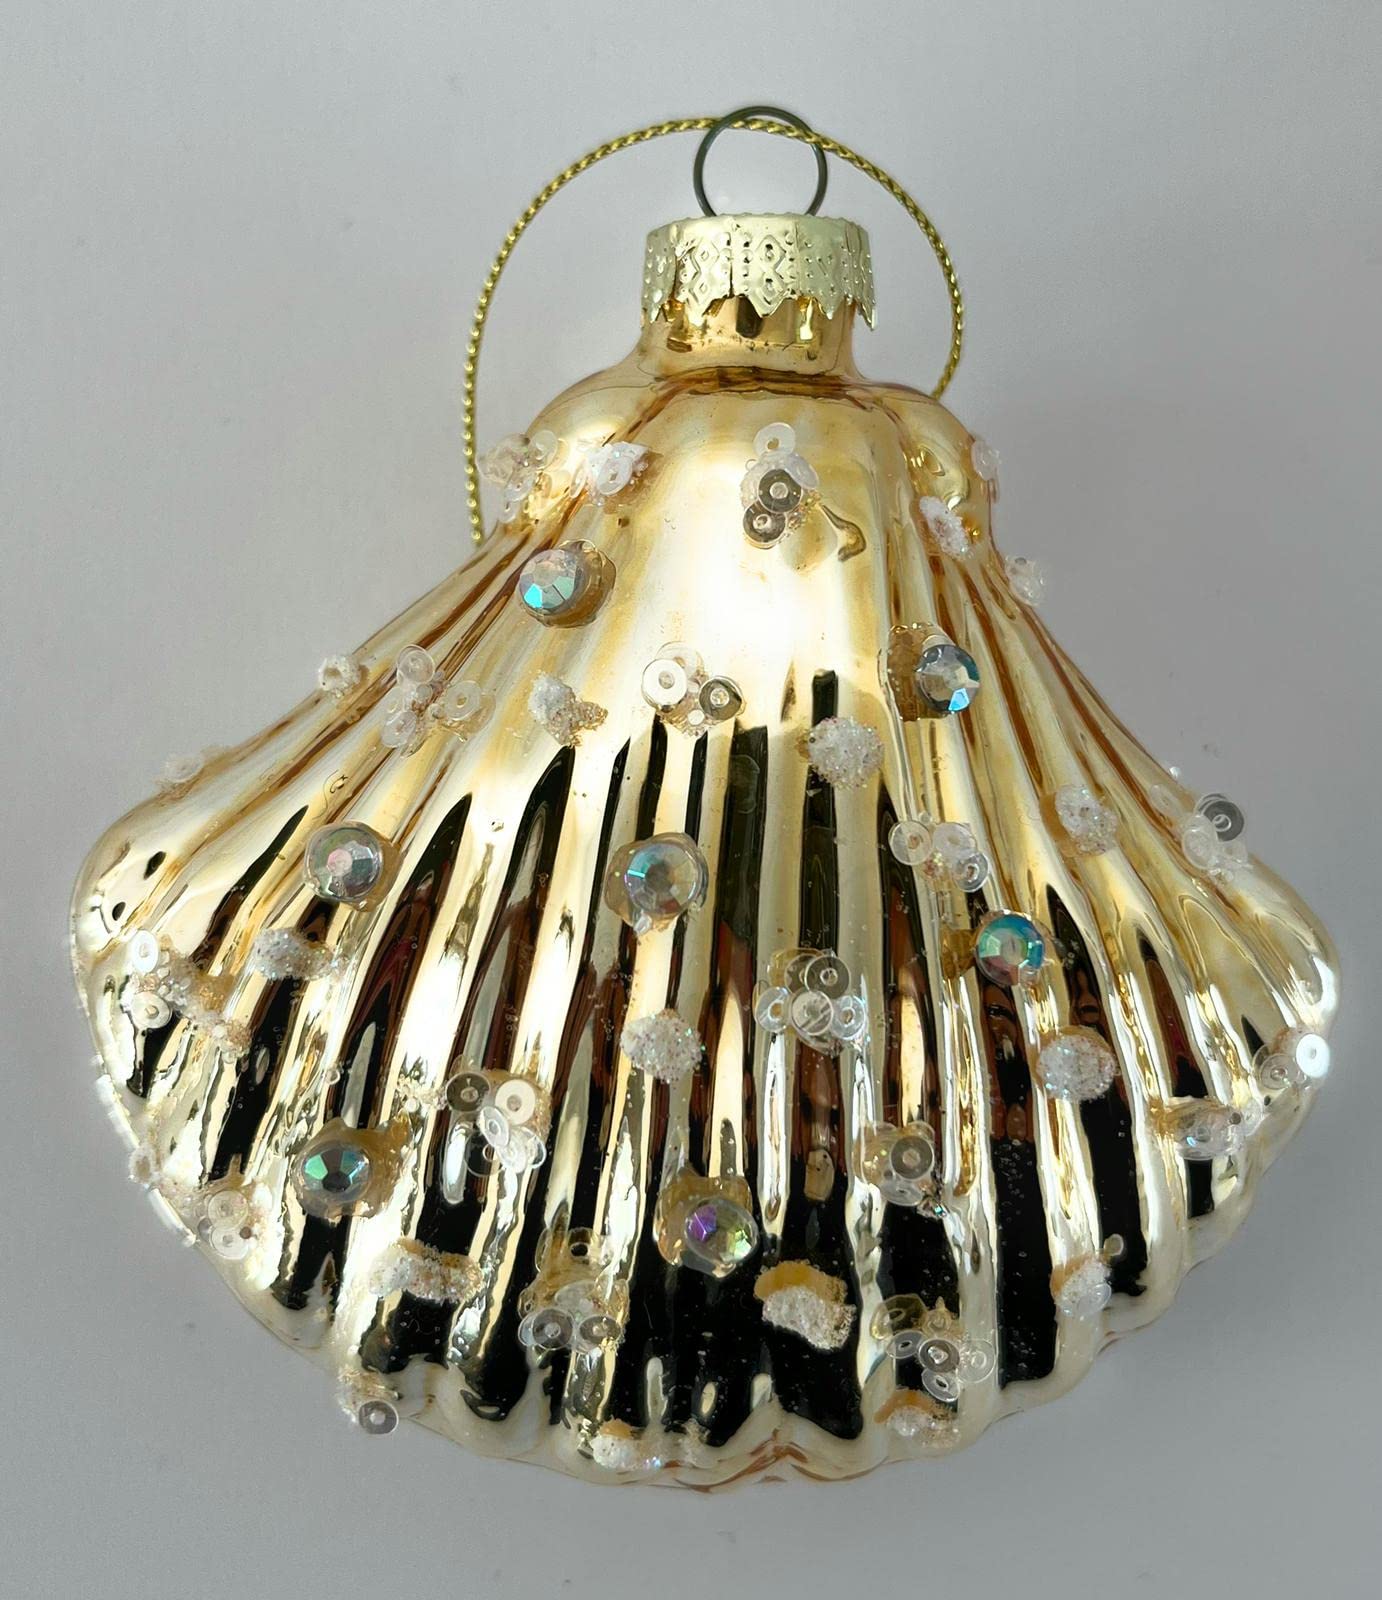 Conchiglie e perline - decorazioni di Natale - confezione da 2 (1 colore oro - 1 colore madreperla)